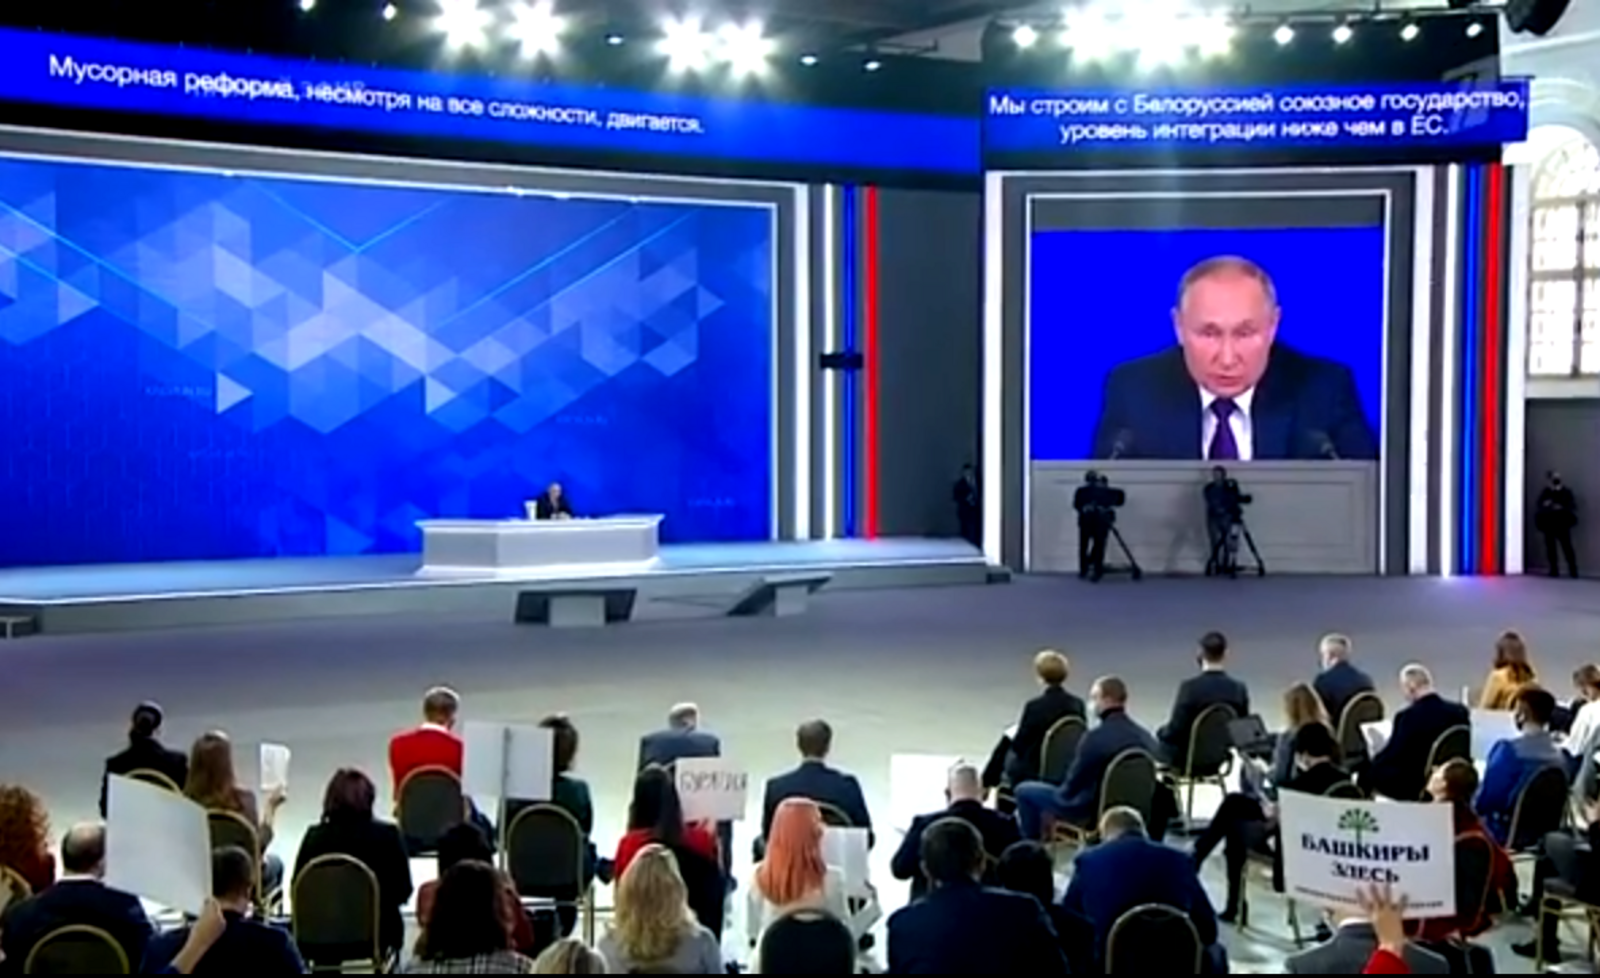 Владимир Путин: Газовые обвинения в адрес России переходят все границы